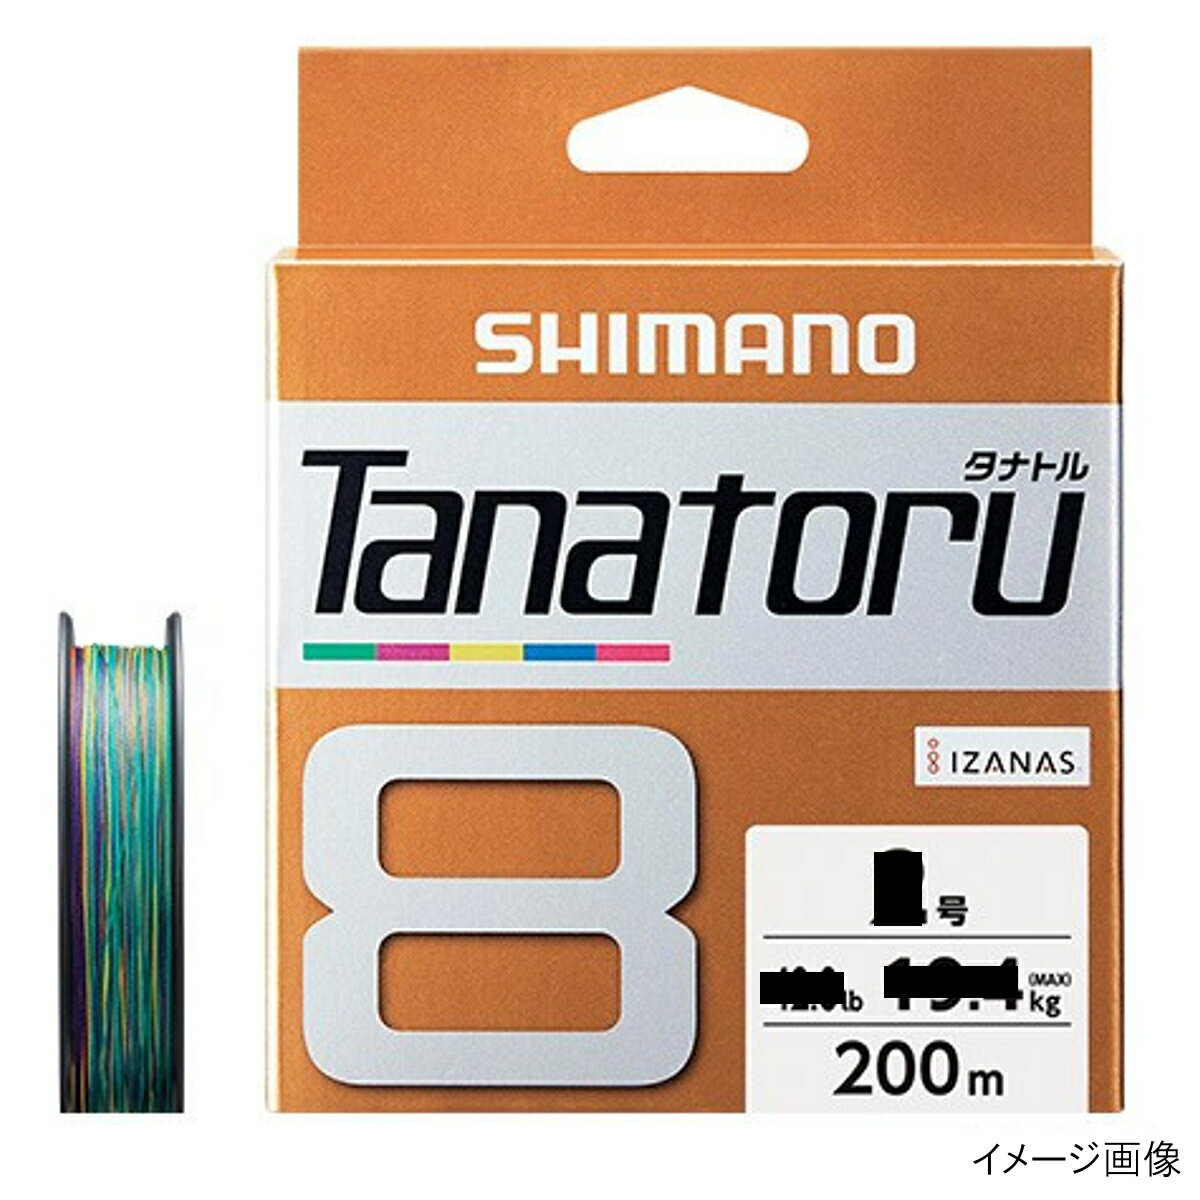 シマノ タナトル8 PLF68R 200m 1号